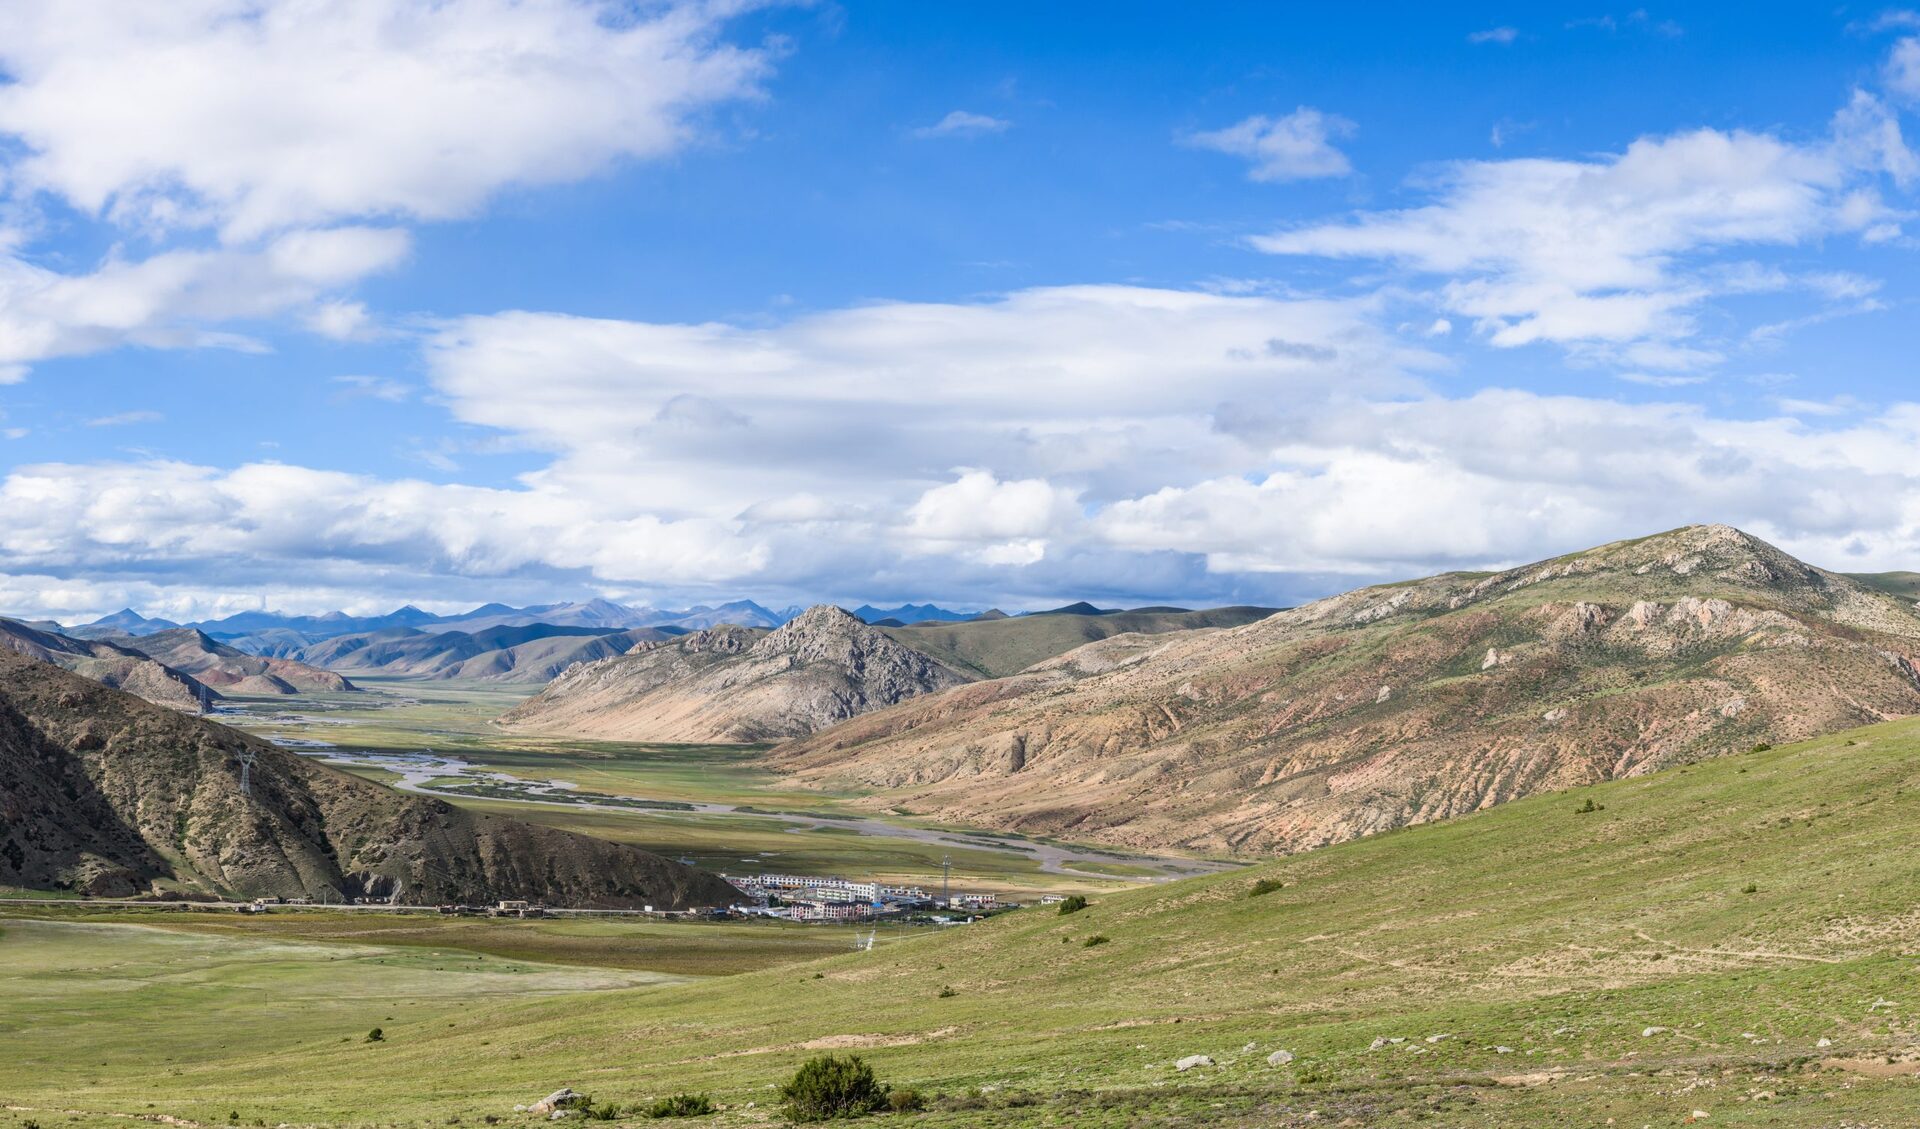 Vista da cidade de Bangda da parte superior da montanha, Condado de Basu (Baxoi), Changdu (Qamdo), Tibet, China.